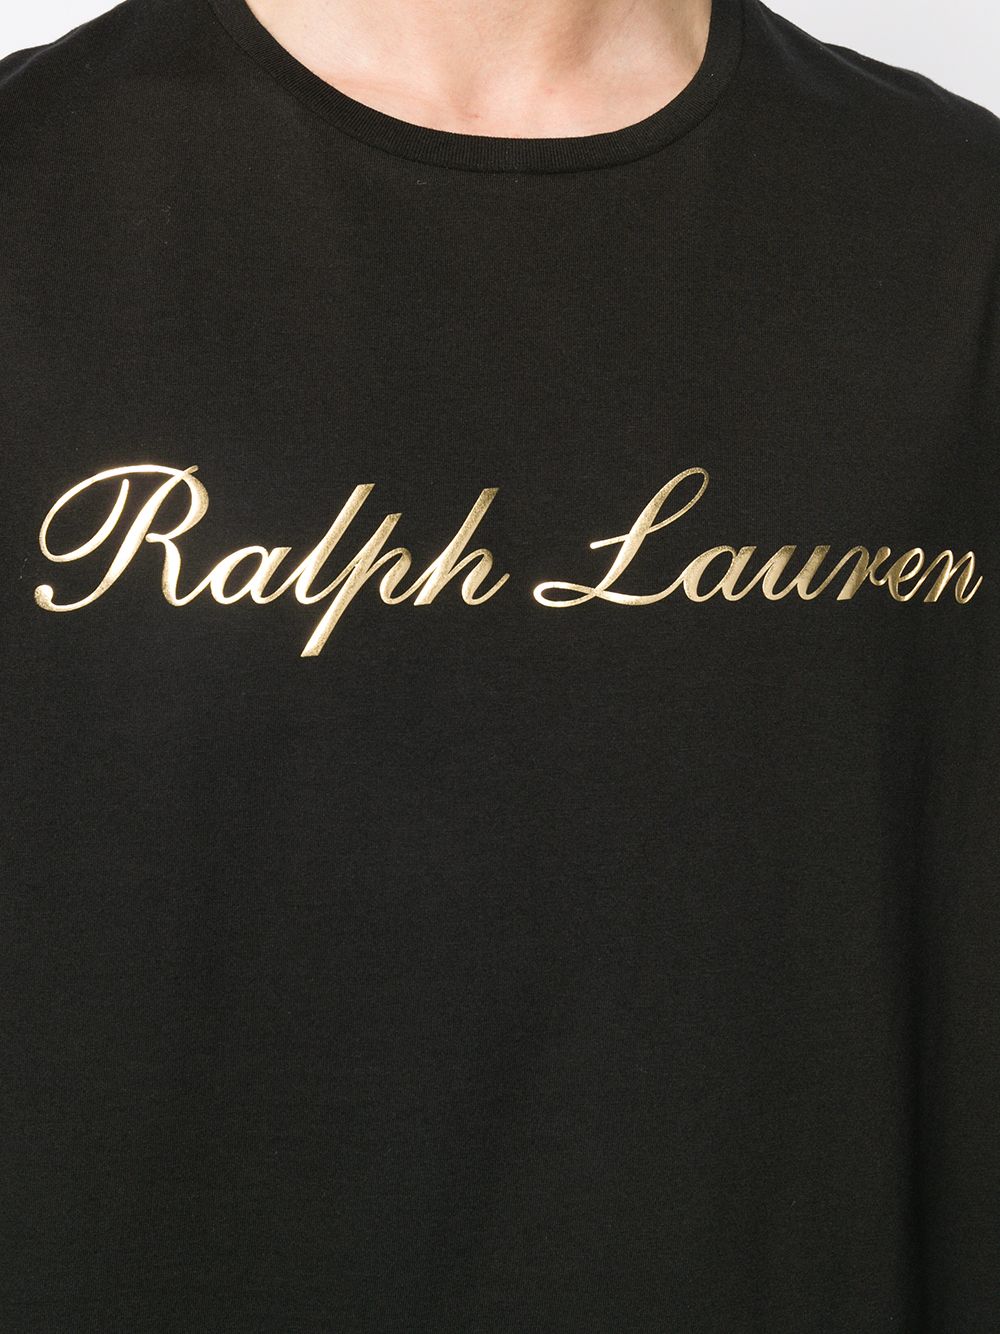 фото Ralph lauren purple label футболка с логотипом